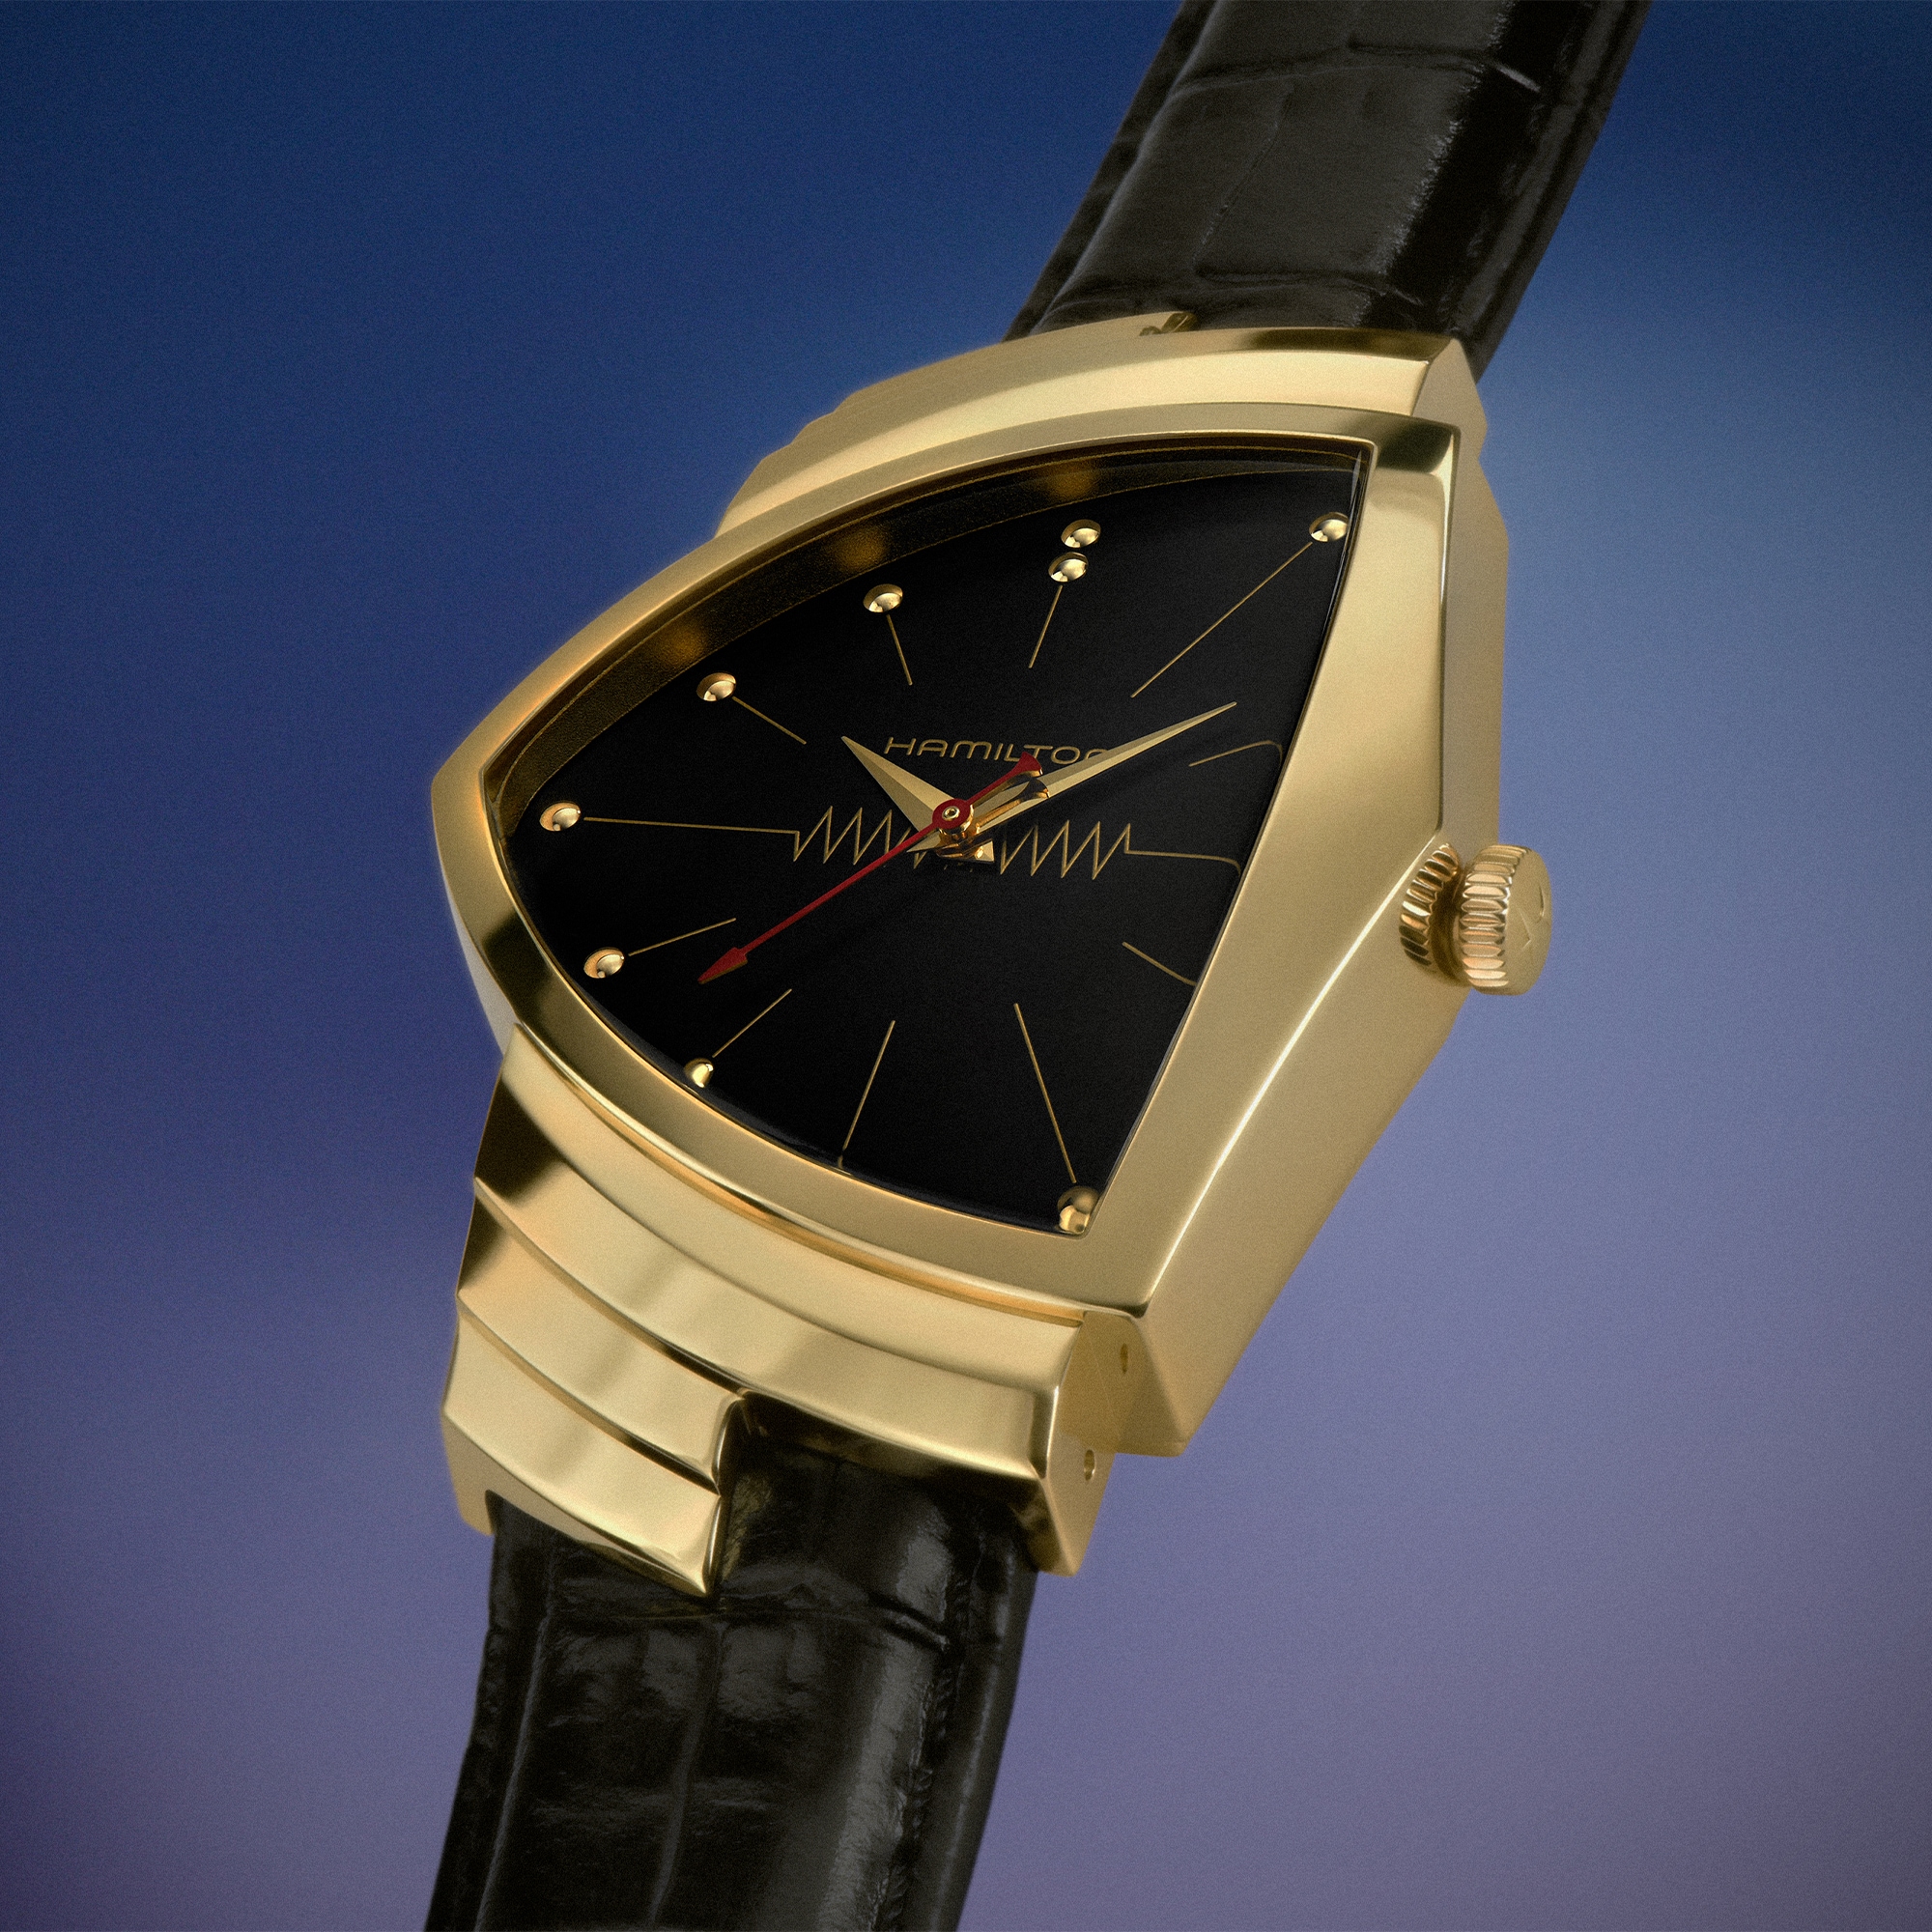 Первые в мире электронные часы возвращаются в корпусе из золота 14 карат.